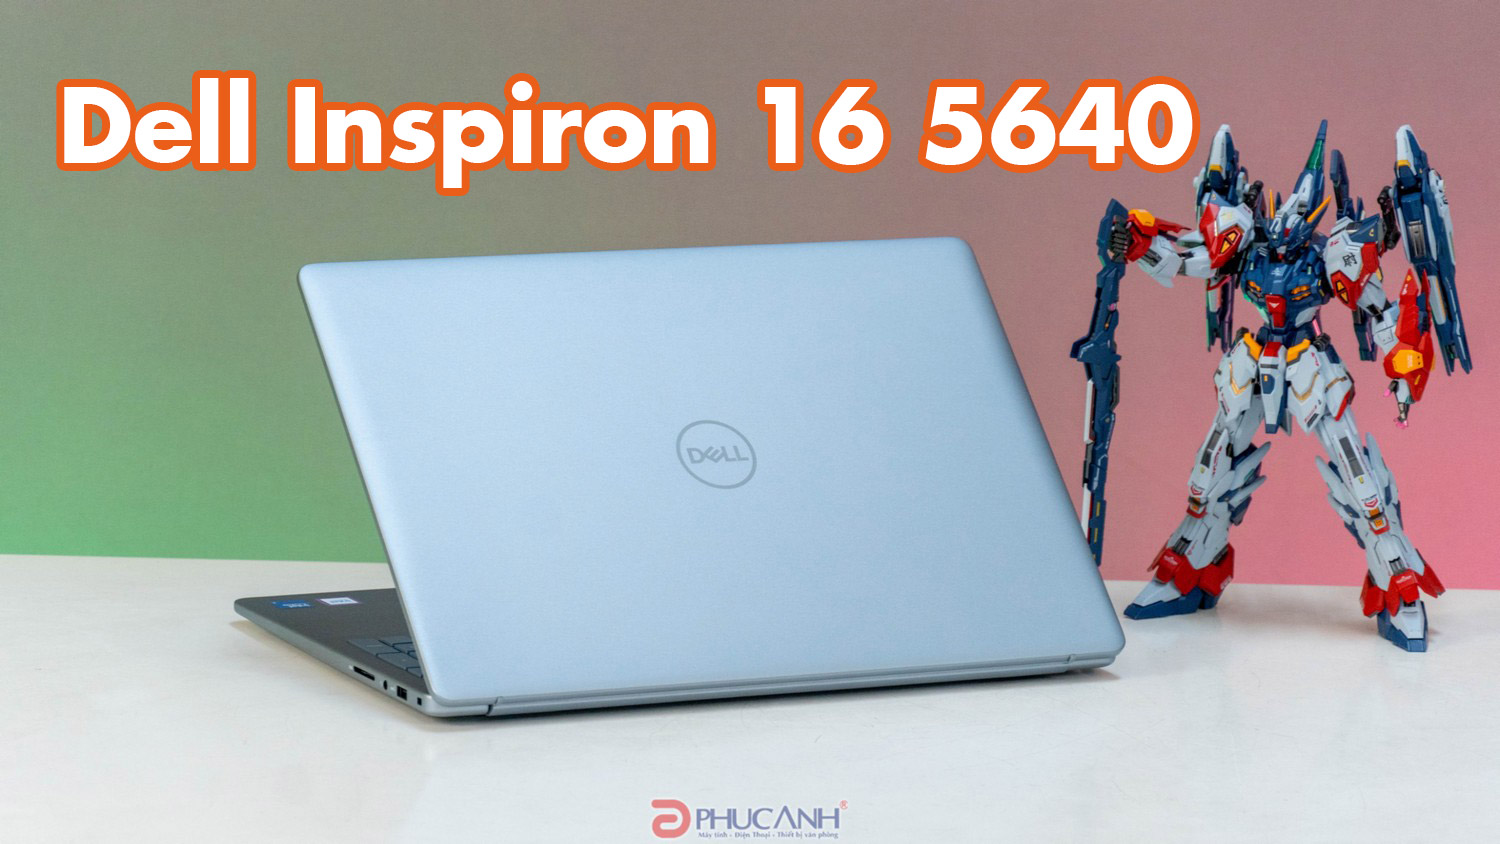 Đánh giá laptop Dell Inspiron 16 5640 - thiết kế sang trọng, trang bị CPU Intel Core U-series hiện đại